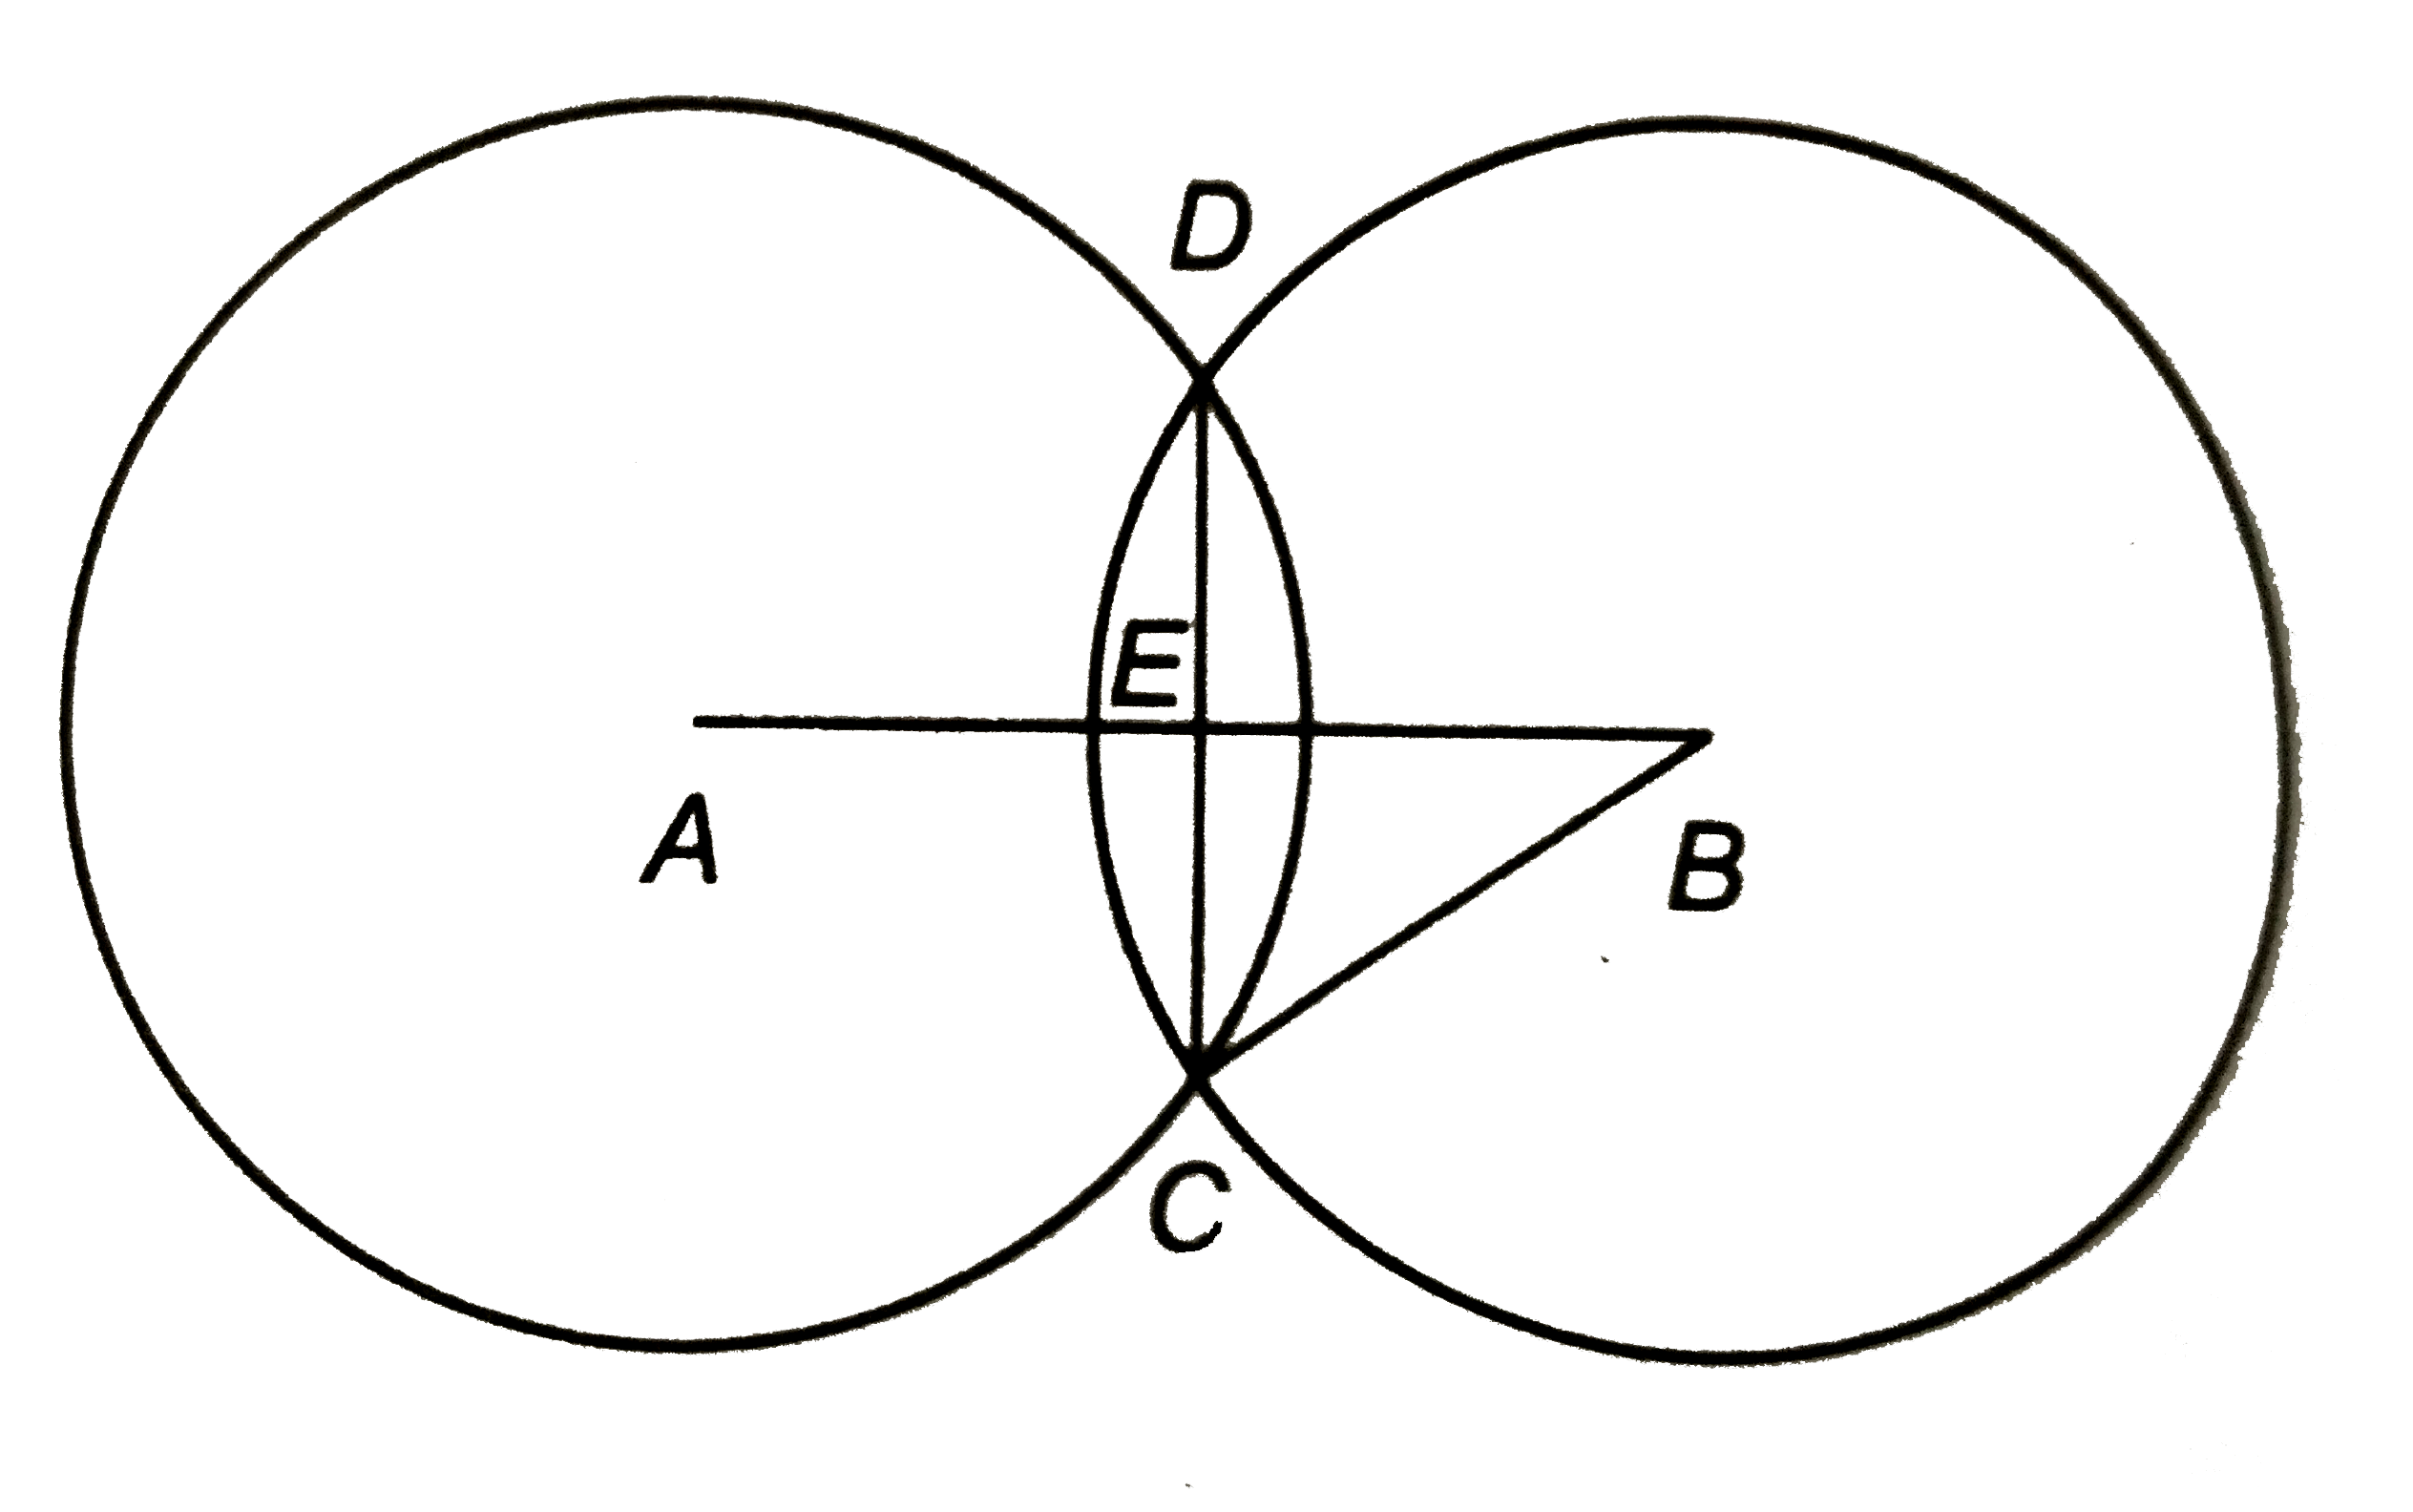 संलग्न चित्र में A और B दो व्रतों के केन्द्र हैं | यदि CB = 17 सेमी, EB = 15 सेमी, तो दोनों वृत्तों की उभयनिष्ठ जीवा की लम्बाई ज्ञात कीजिए |